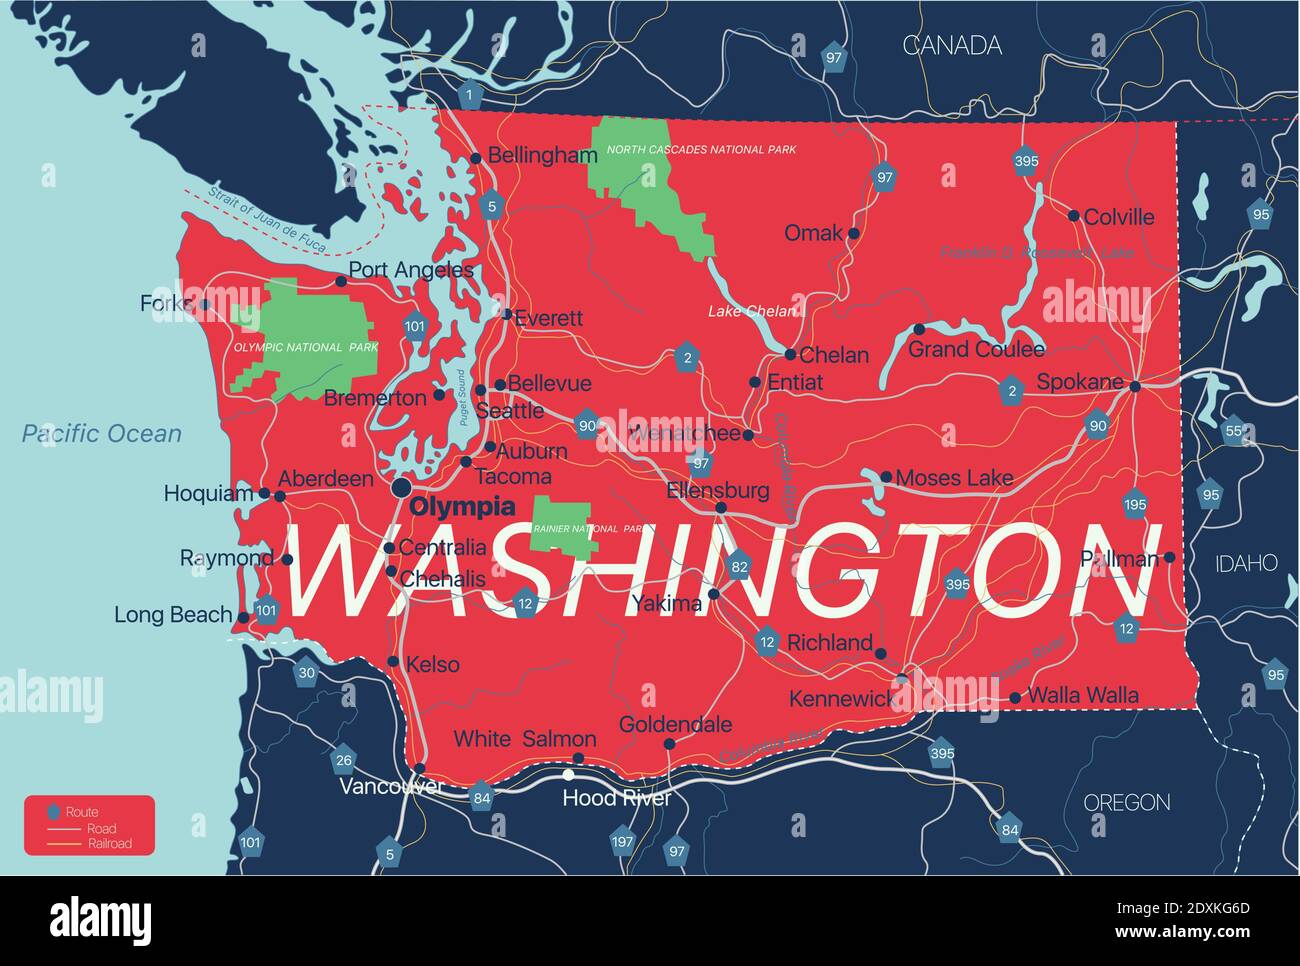 Stato di Washington Mappa dettagliata modificabile con città e città, siti geografici, strade, ferrovie, interstatali e autostrade degli Stati Uniti. File vettoriale EPS-10, tr Illustrazione Vettoriale